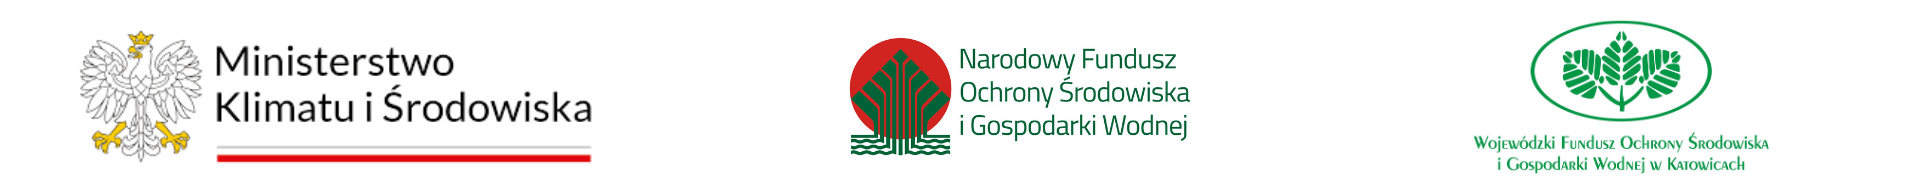 Logotypy: Ministerstwo Klimatu i Środowiska, Narodowy Fundusz Ochrony Środowiska i Gospodarki Wodnej, Wojewódzki Fundusz Ochrony Środowiska i Gospodarki Wodnej w Katowicach